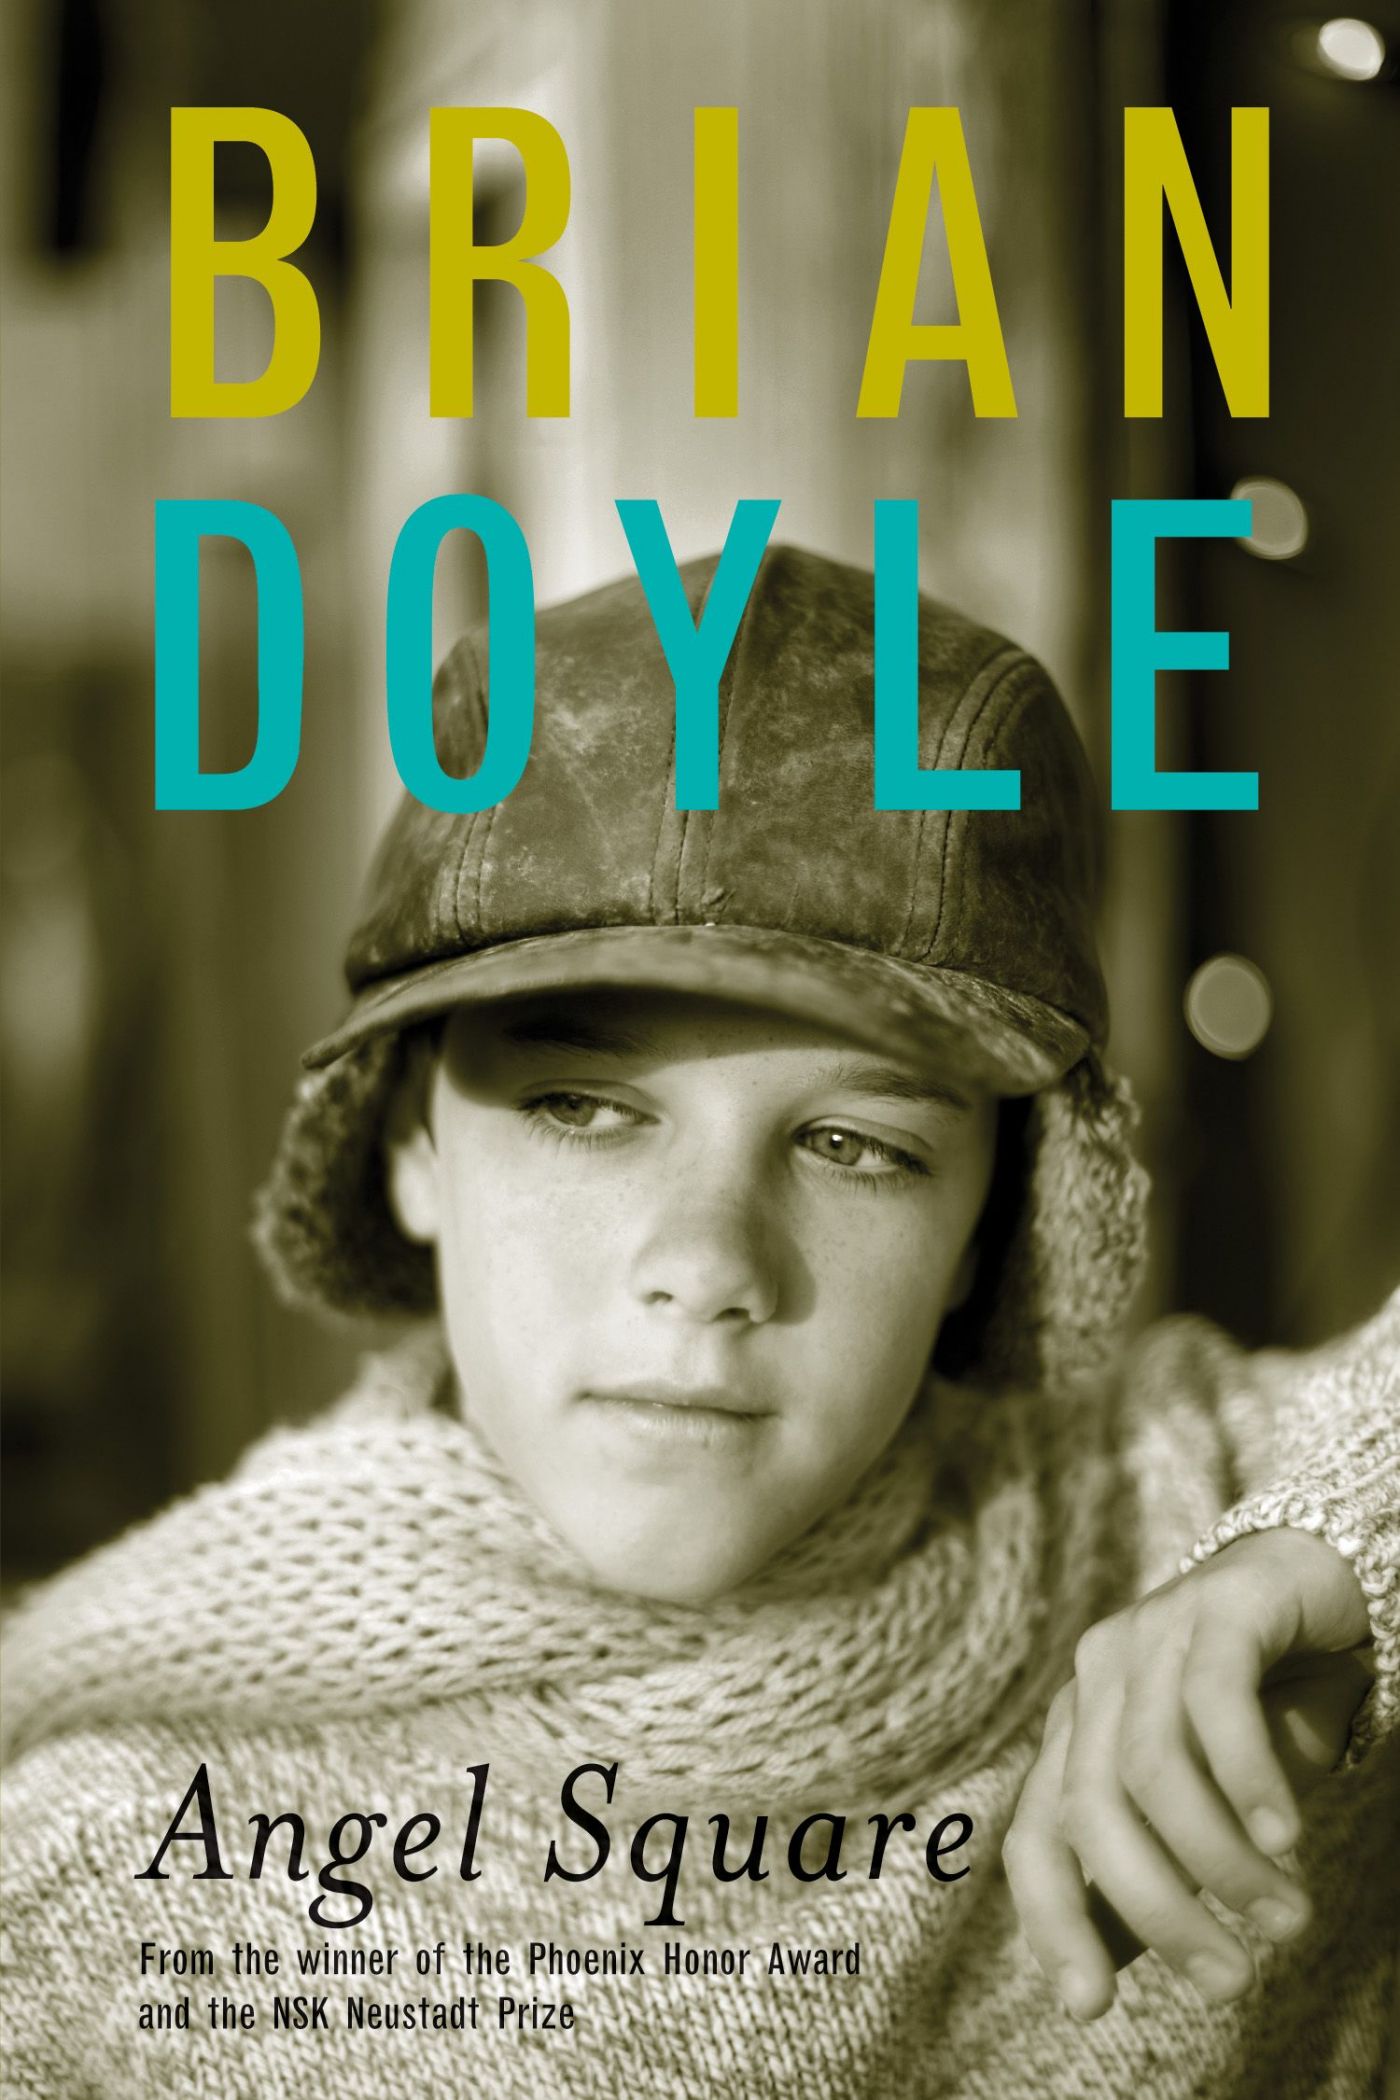 Photographie couleur d'un jeune garçon, portant casquette et chandail de laine et affichant un regard pensif. Texte dactylographié en anglais. Le nom de l'auteur en jaune et en bleu.